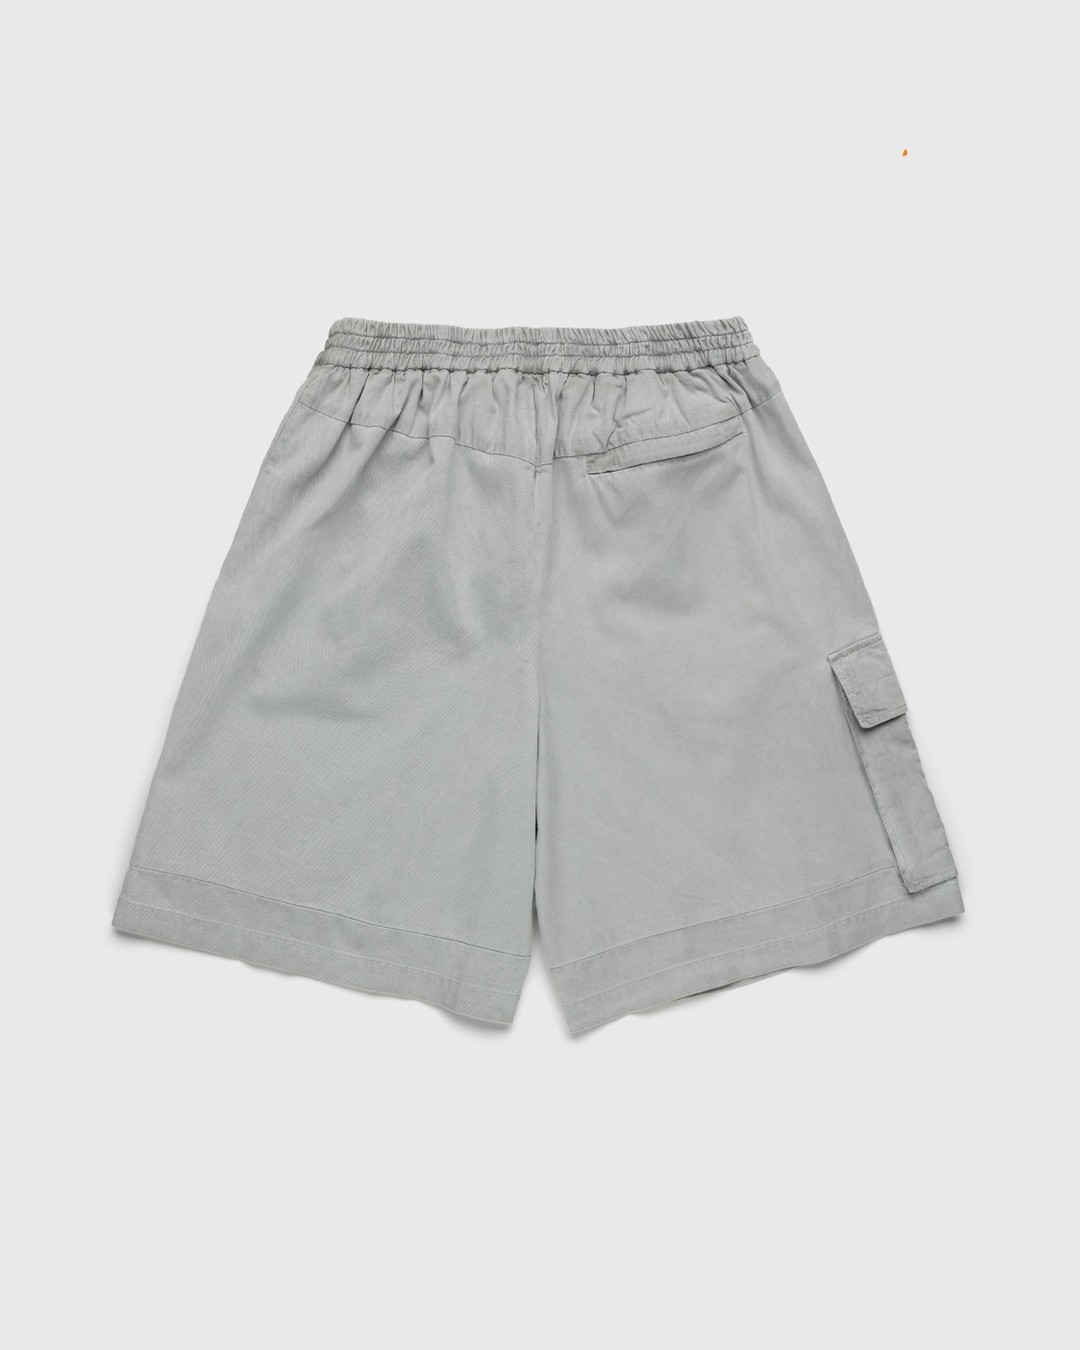 A-Cold-Wall* – Density Short Light Grey - Shorts - Grey - Image 2